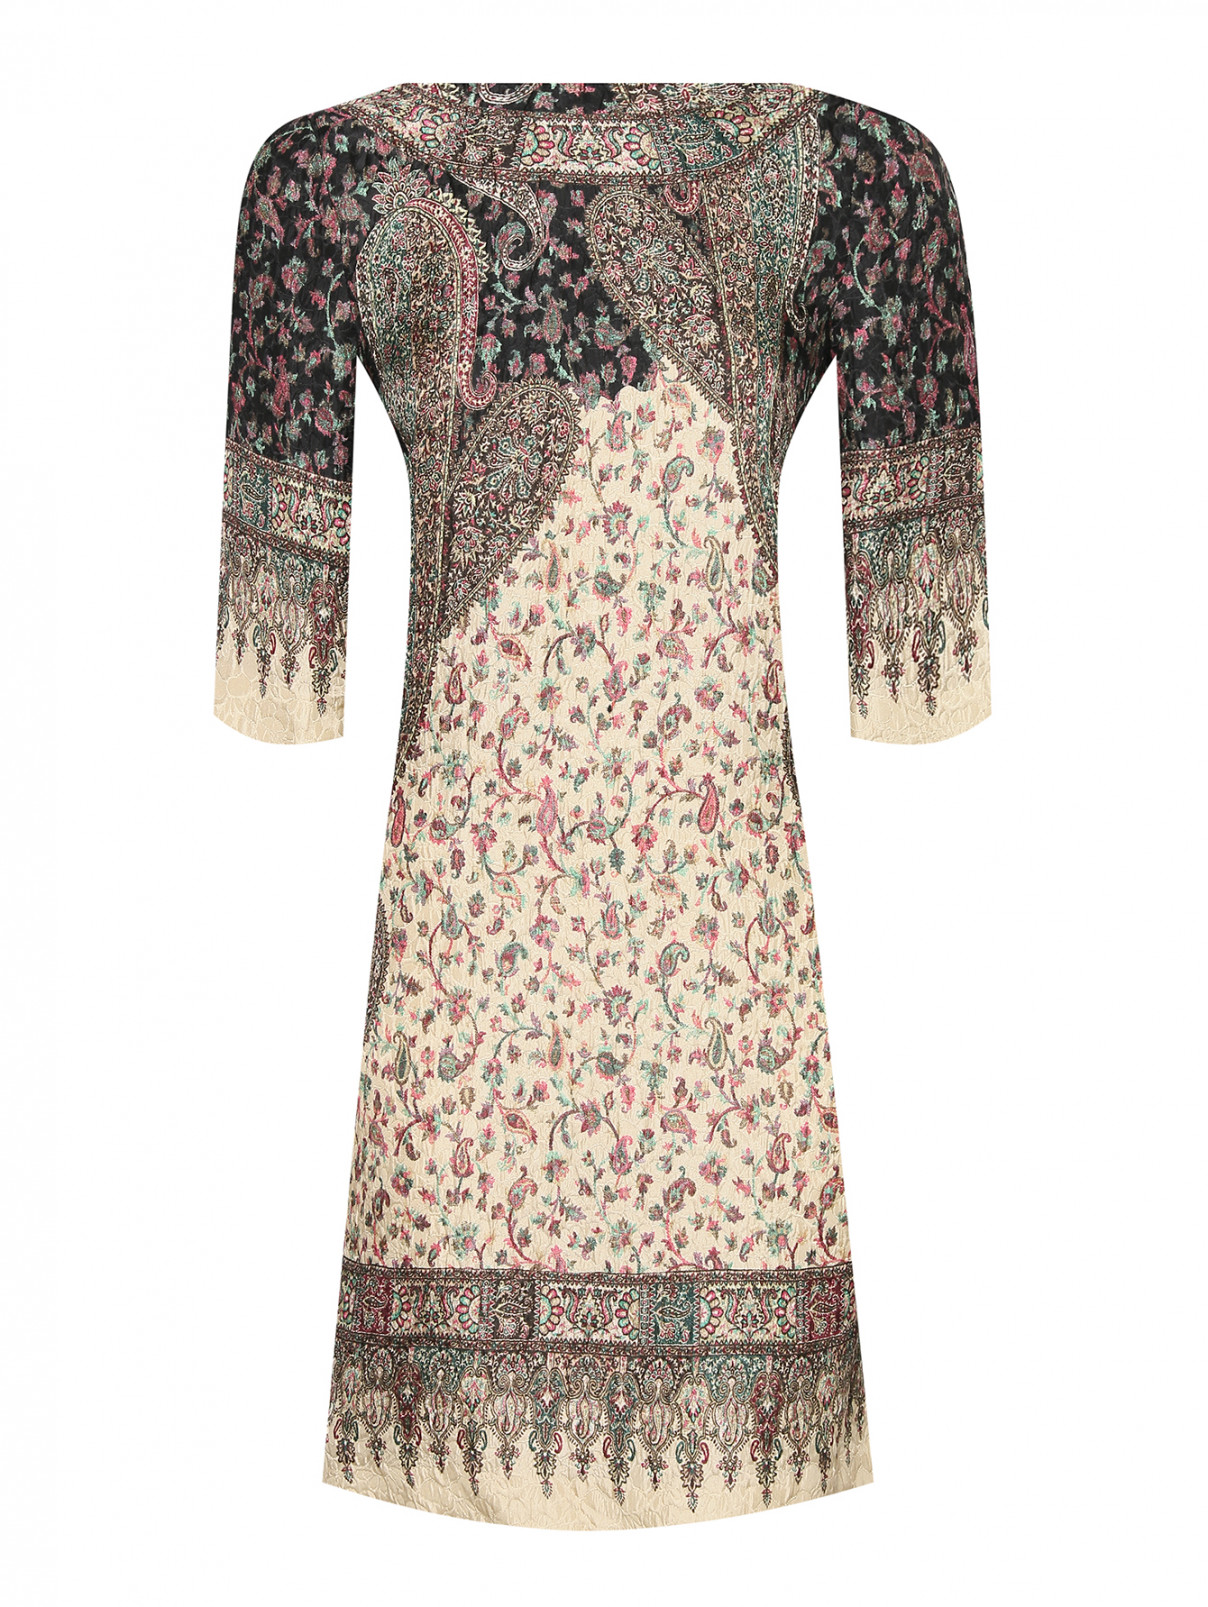 Платье из шелка, вискозы и шерсти с узором Etro  –  Общий вид  – Цвет:  Узор